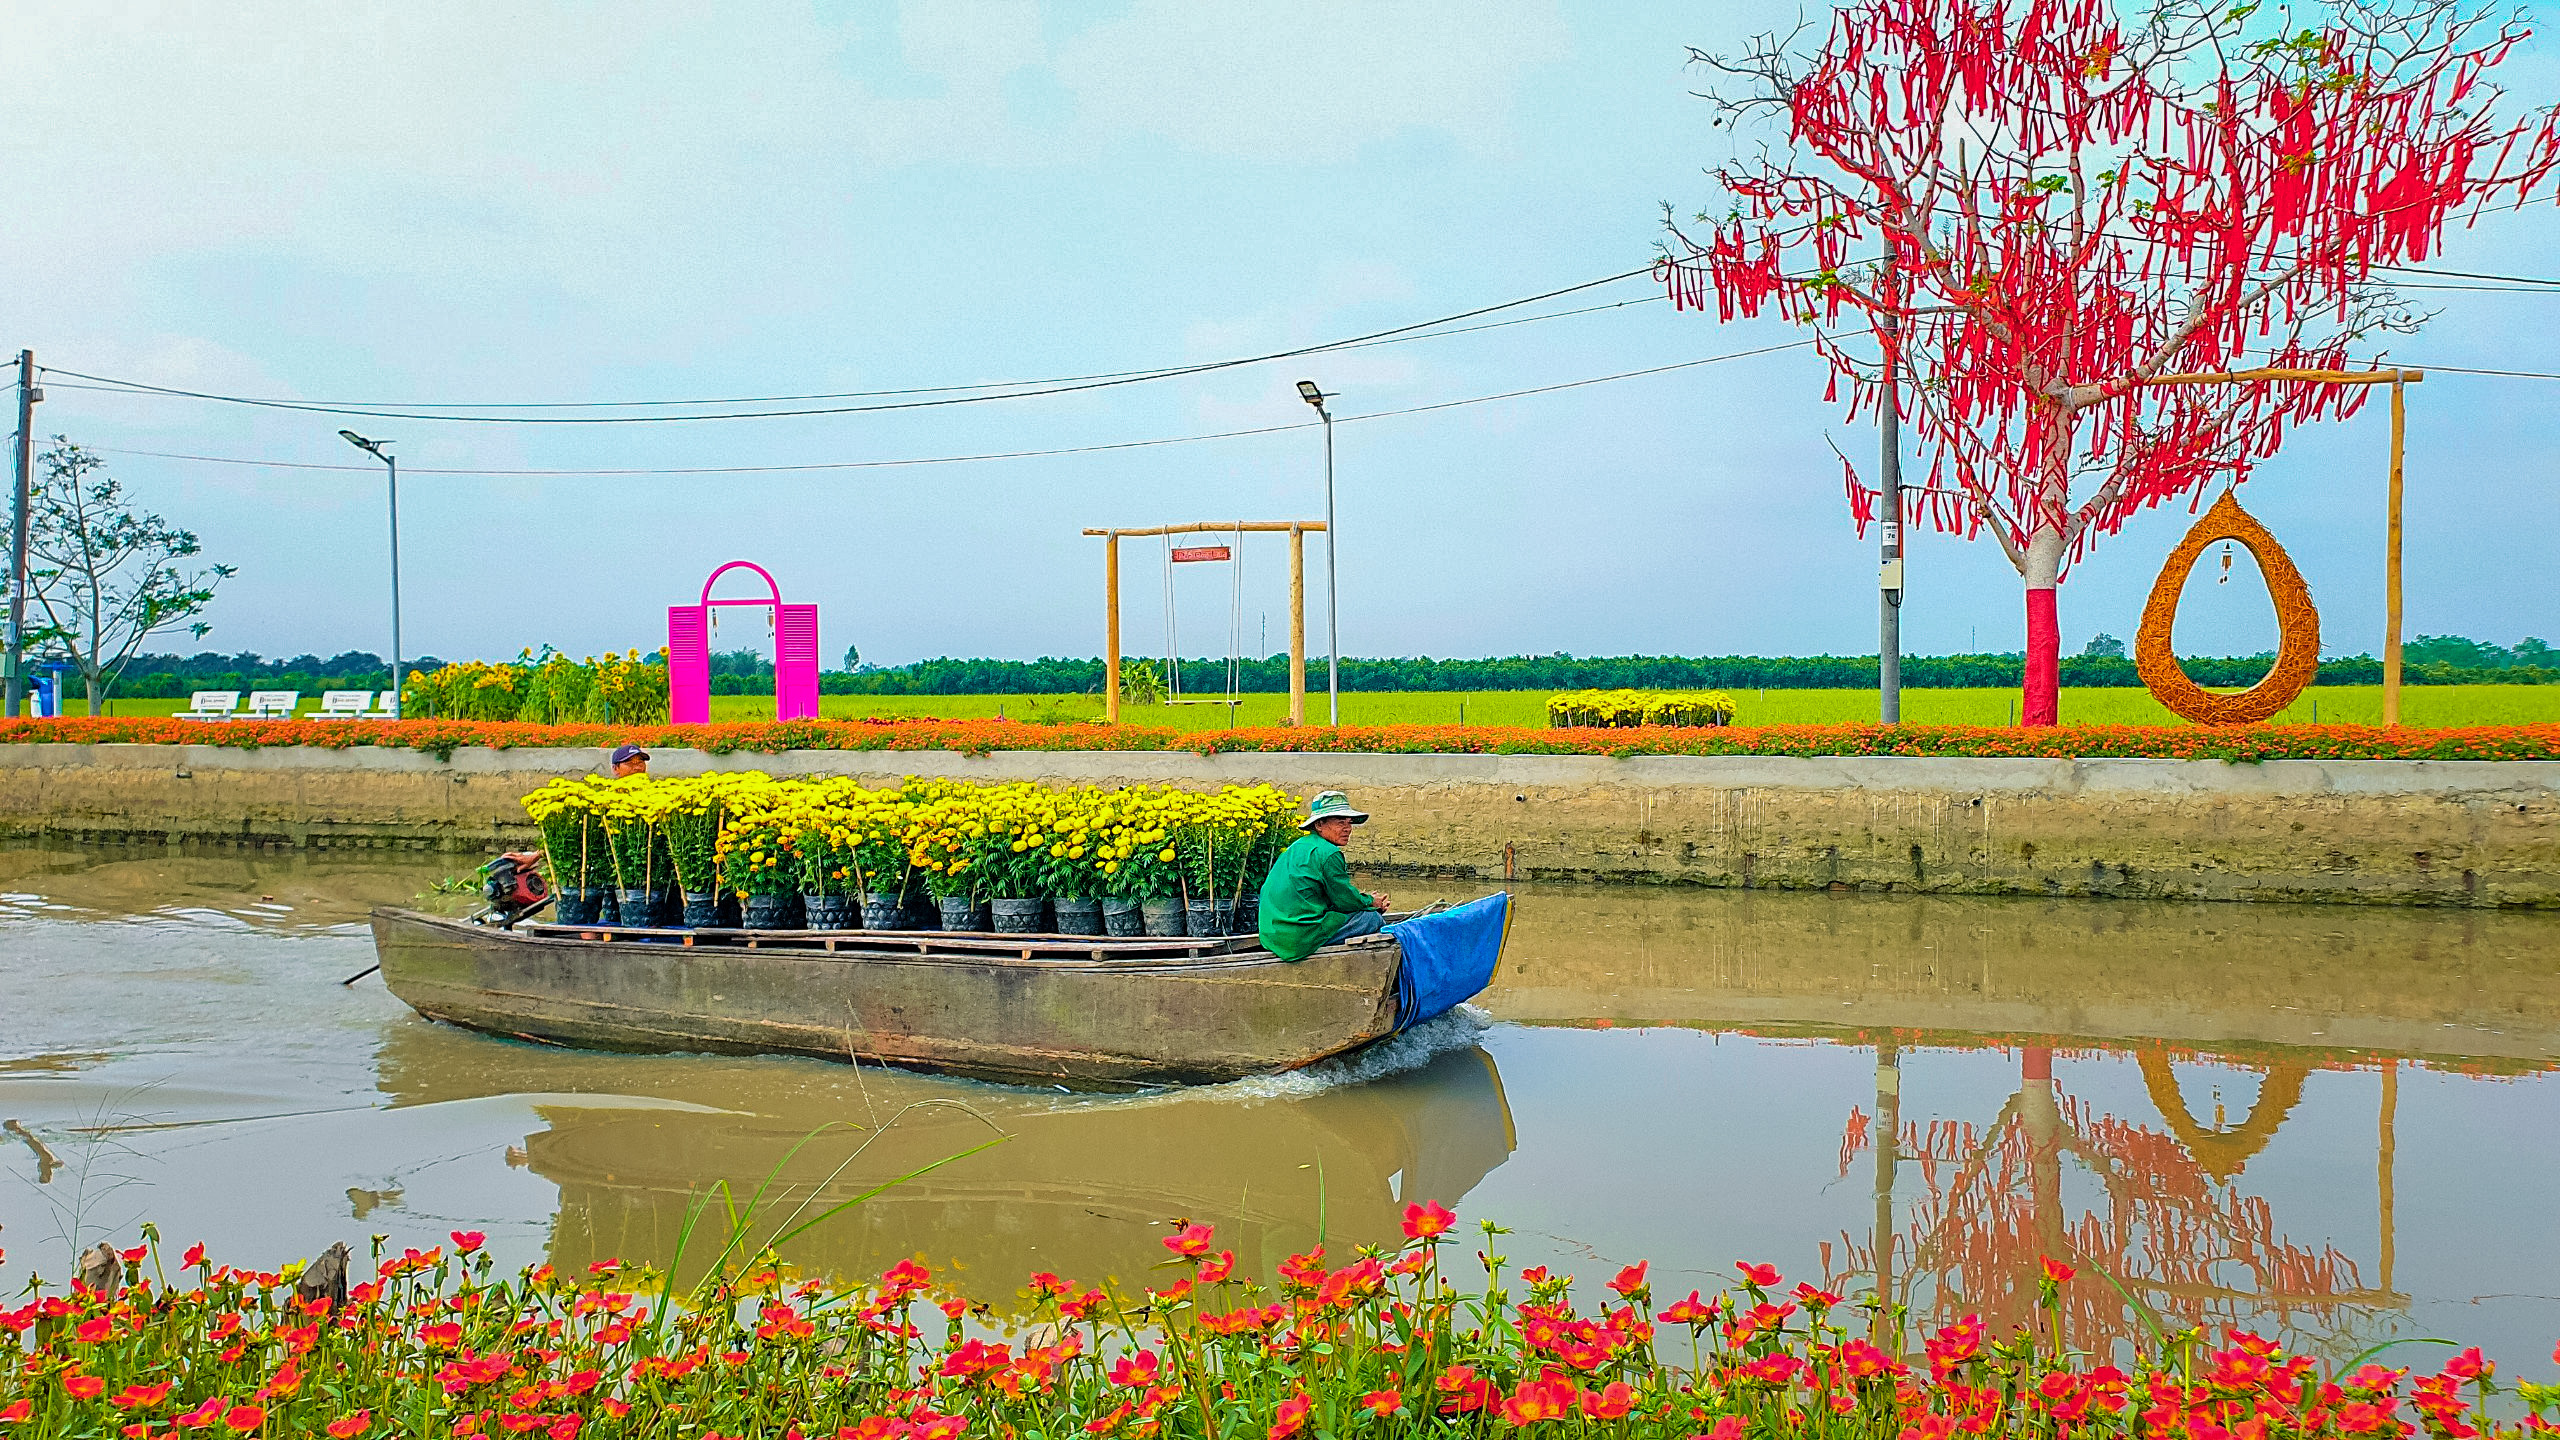 Ghe xuồng chở hoa Tết trên dòng sông êm đềm sẽ khiến bạn cảm nhận được hương vị truyền thống của một Tết Việt Nam. Hãy theo dõi bức ảnh đầy thú vị này và khám phá những cảm xúc sâu sắc mà nó mang lại.